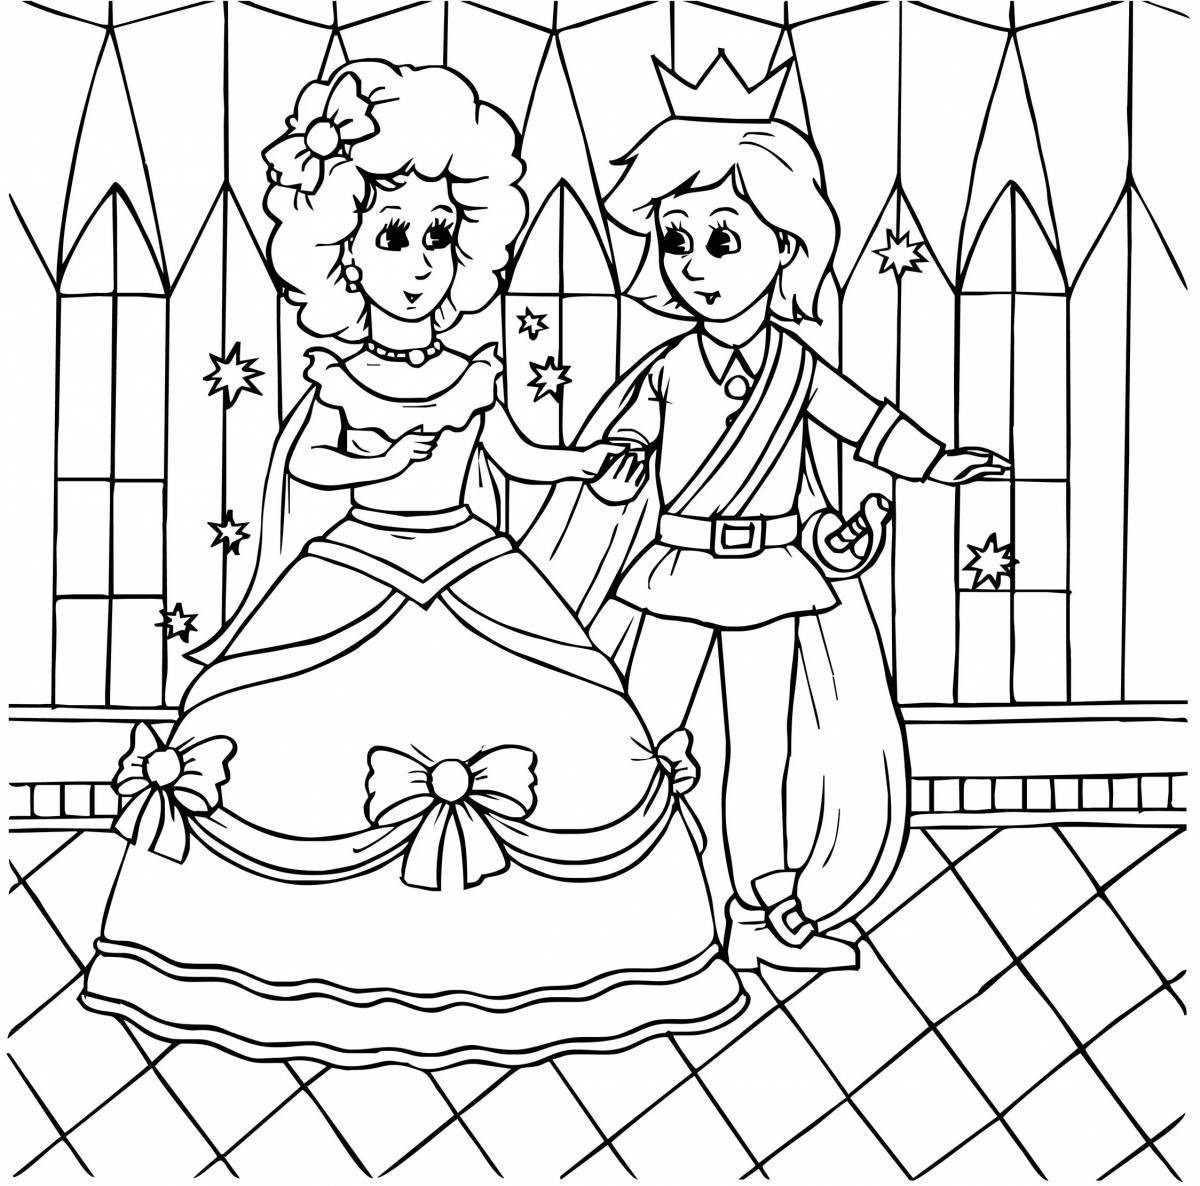 Coloring page joyful princess at the ball